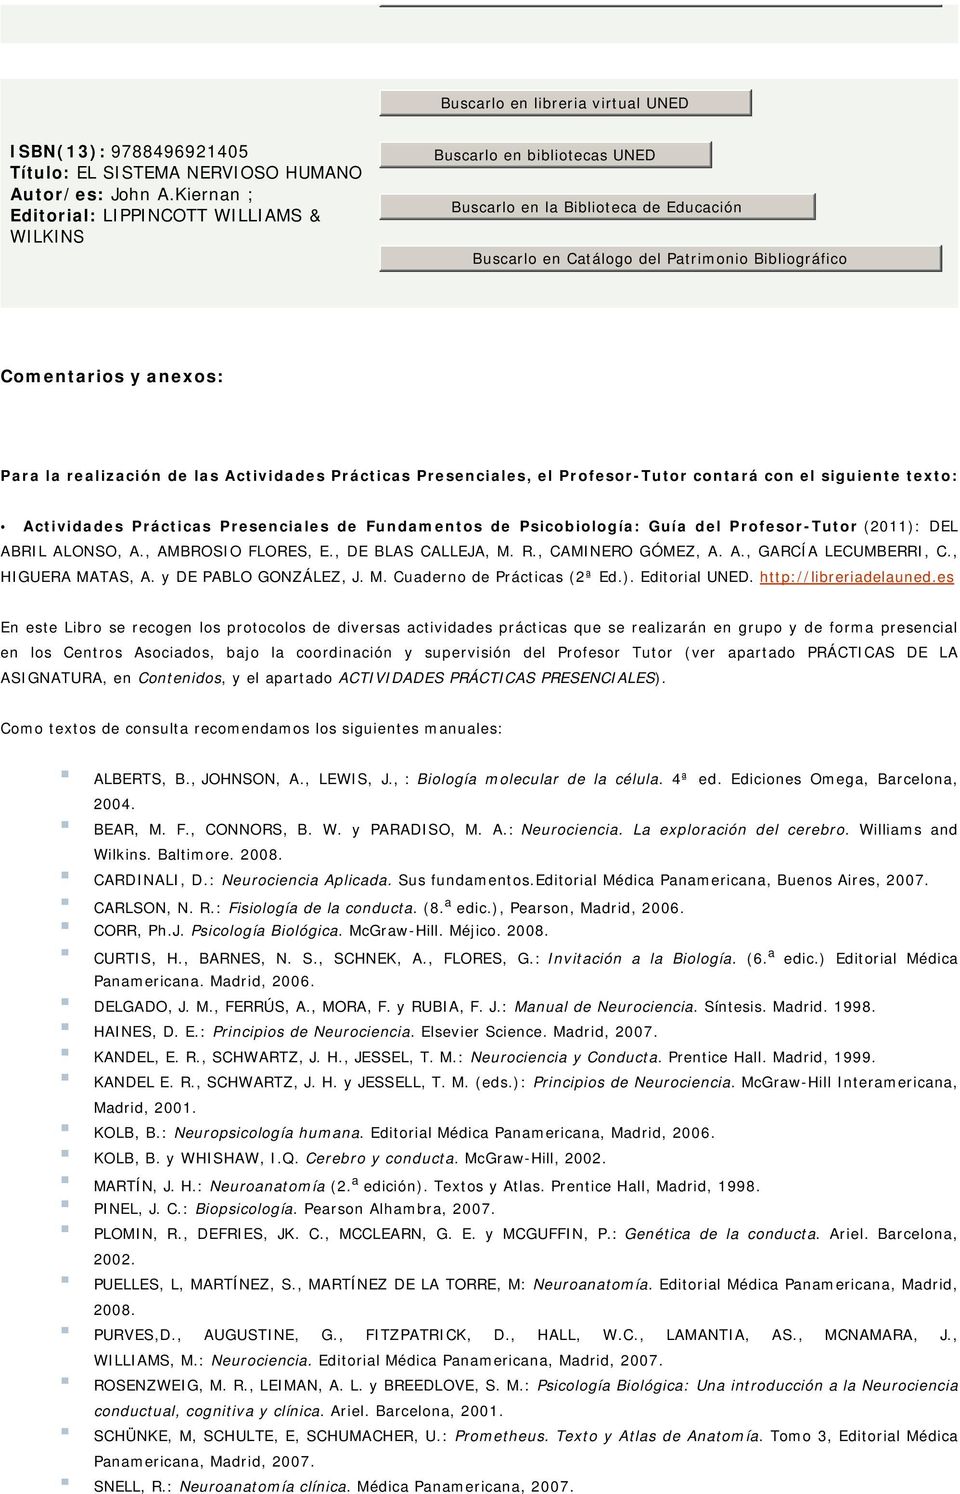 Prácticas Presenciales de Fundamentos de Psicobiología: Guía del Profesor-Tutor (2011): DEL ABRIL ALONSO, A., AMBROSIO FLORES, E., DE BLAS CALLEJA, M. R., CAMINERO GÓMEZ, A. A., GARCÍA LECUMBERRI, C.